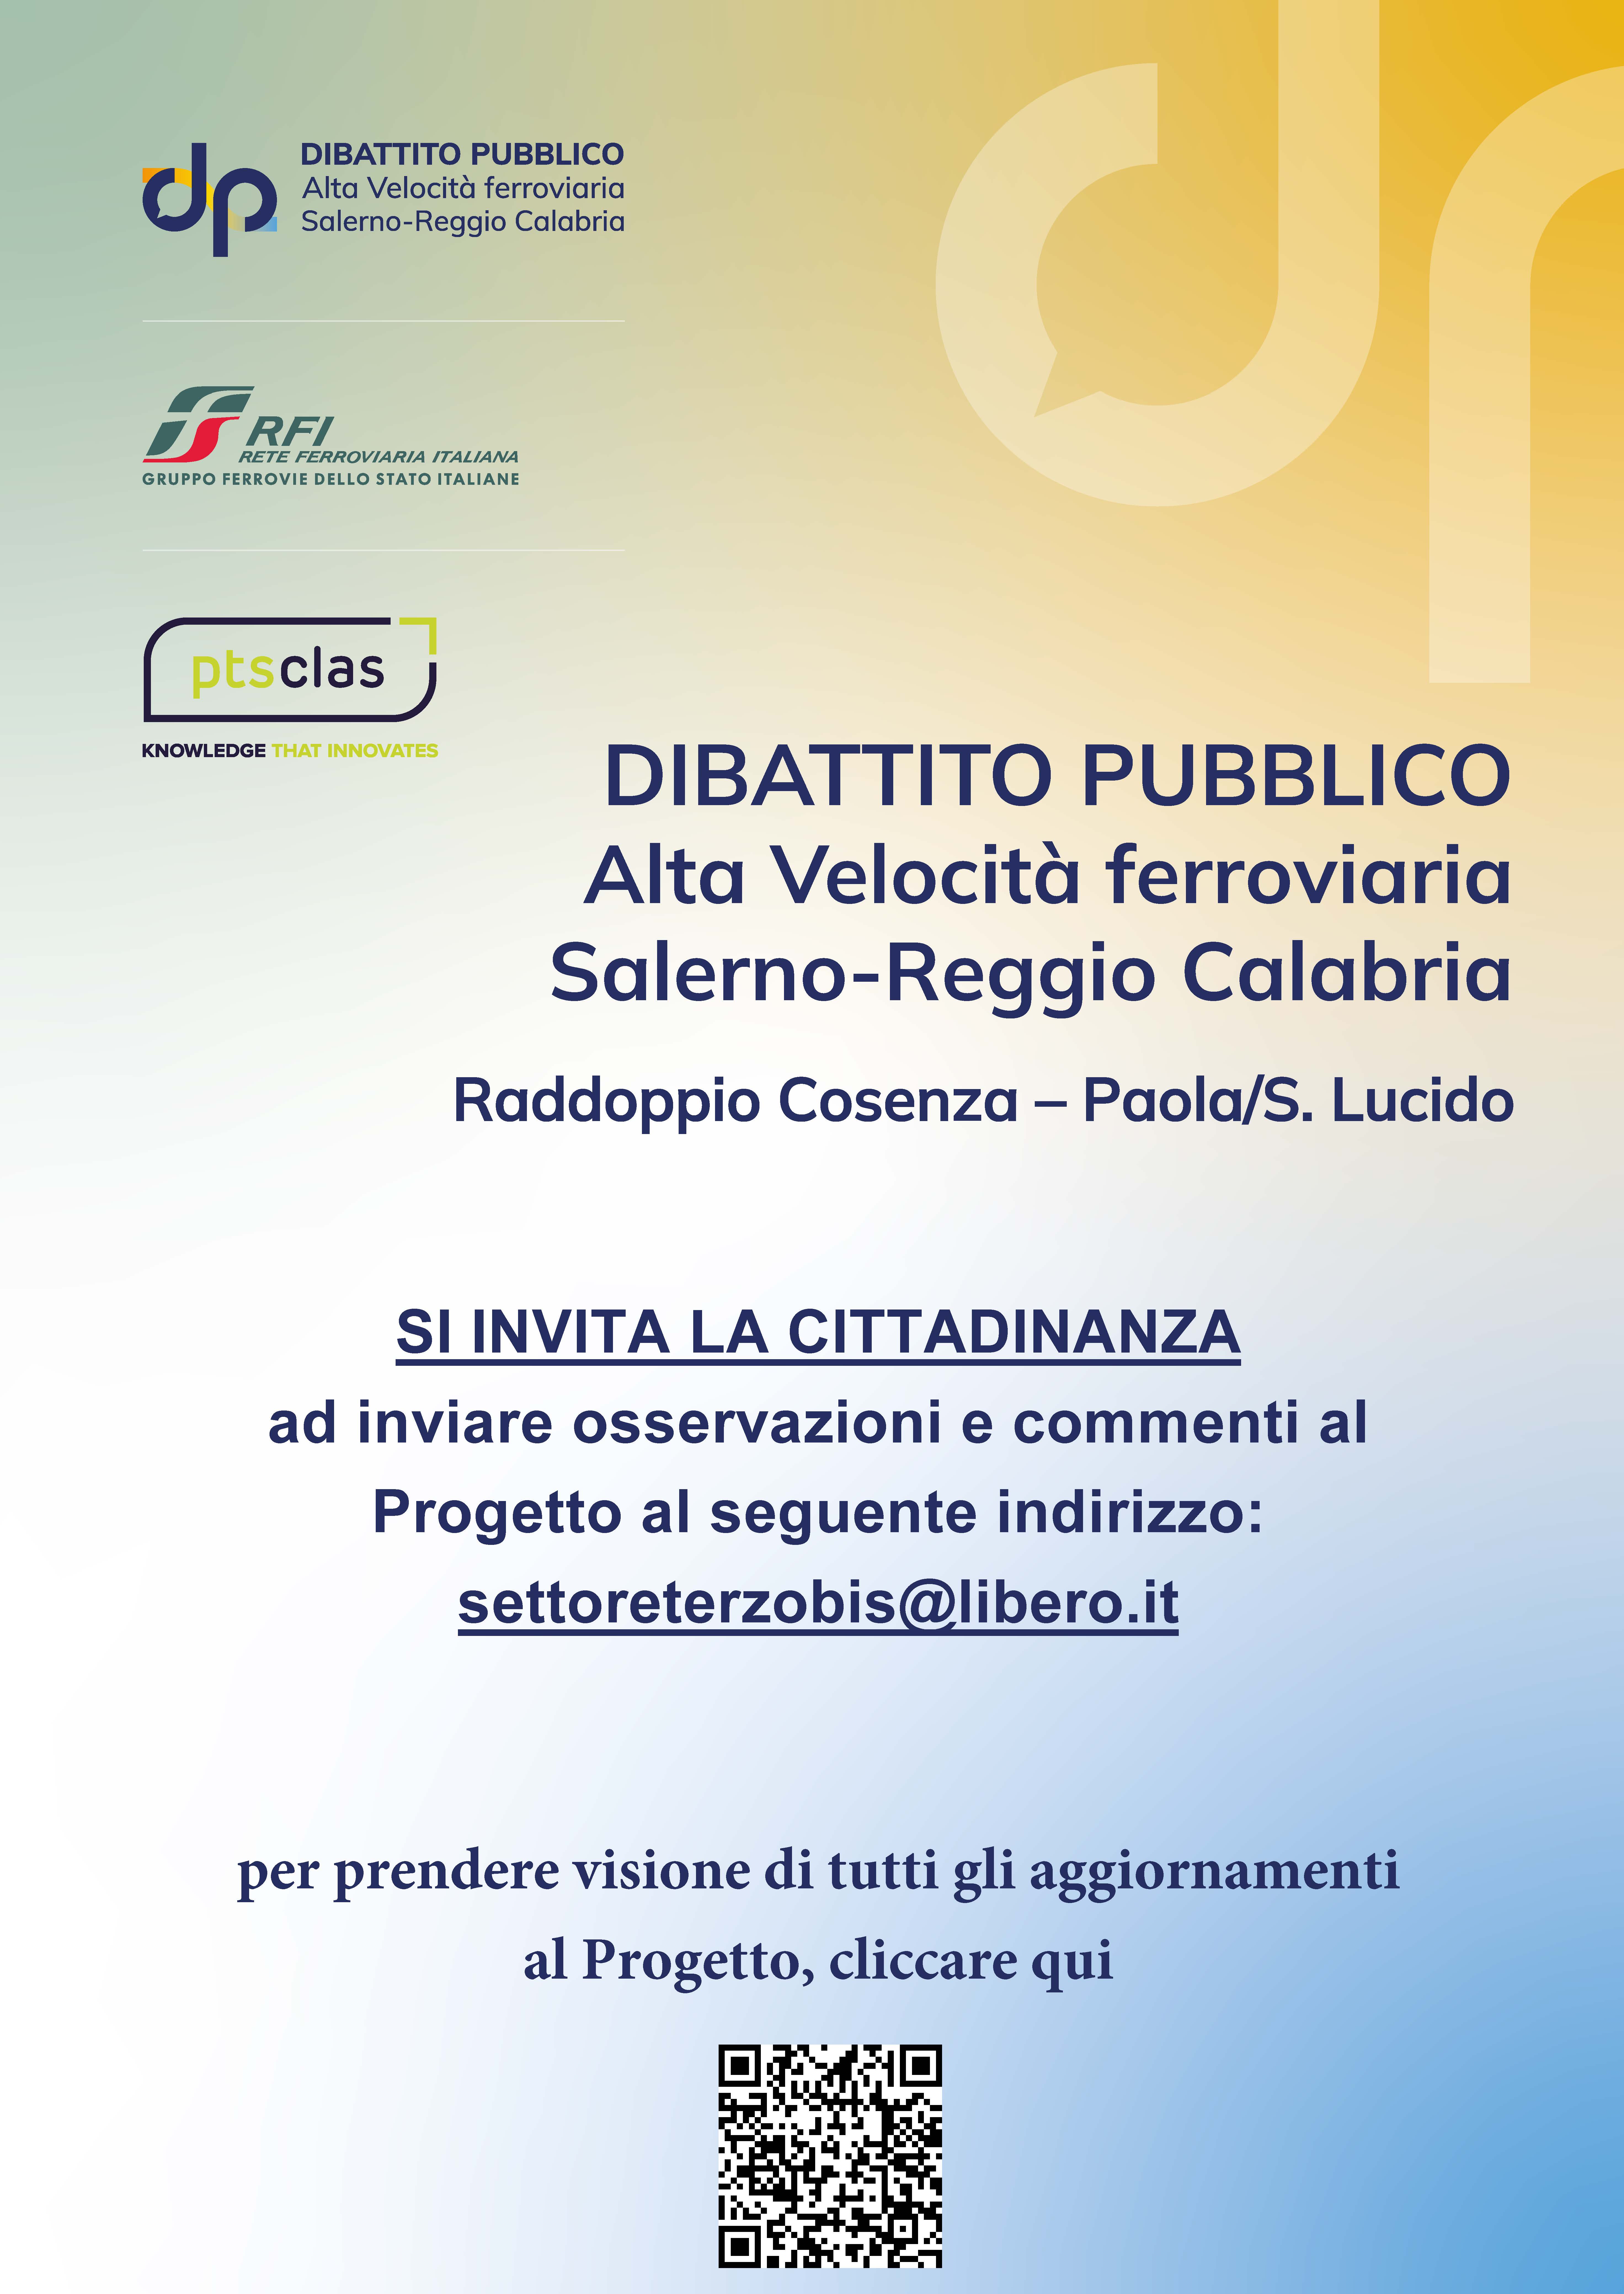 Invito a fornire osservazioni e commenti al Progetto RFI "Alta Velocità ferroviaria Salerno-Reggio Calabria Raddoppio Cosenza – Paola/S. Lucido"